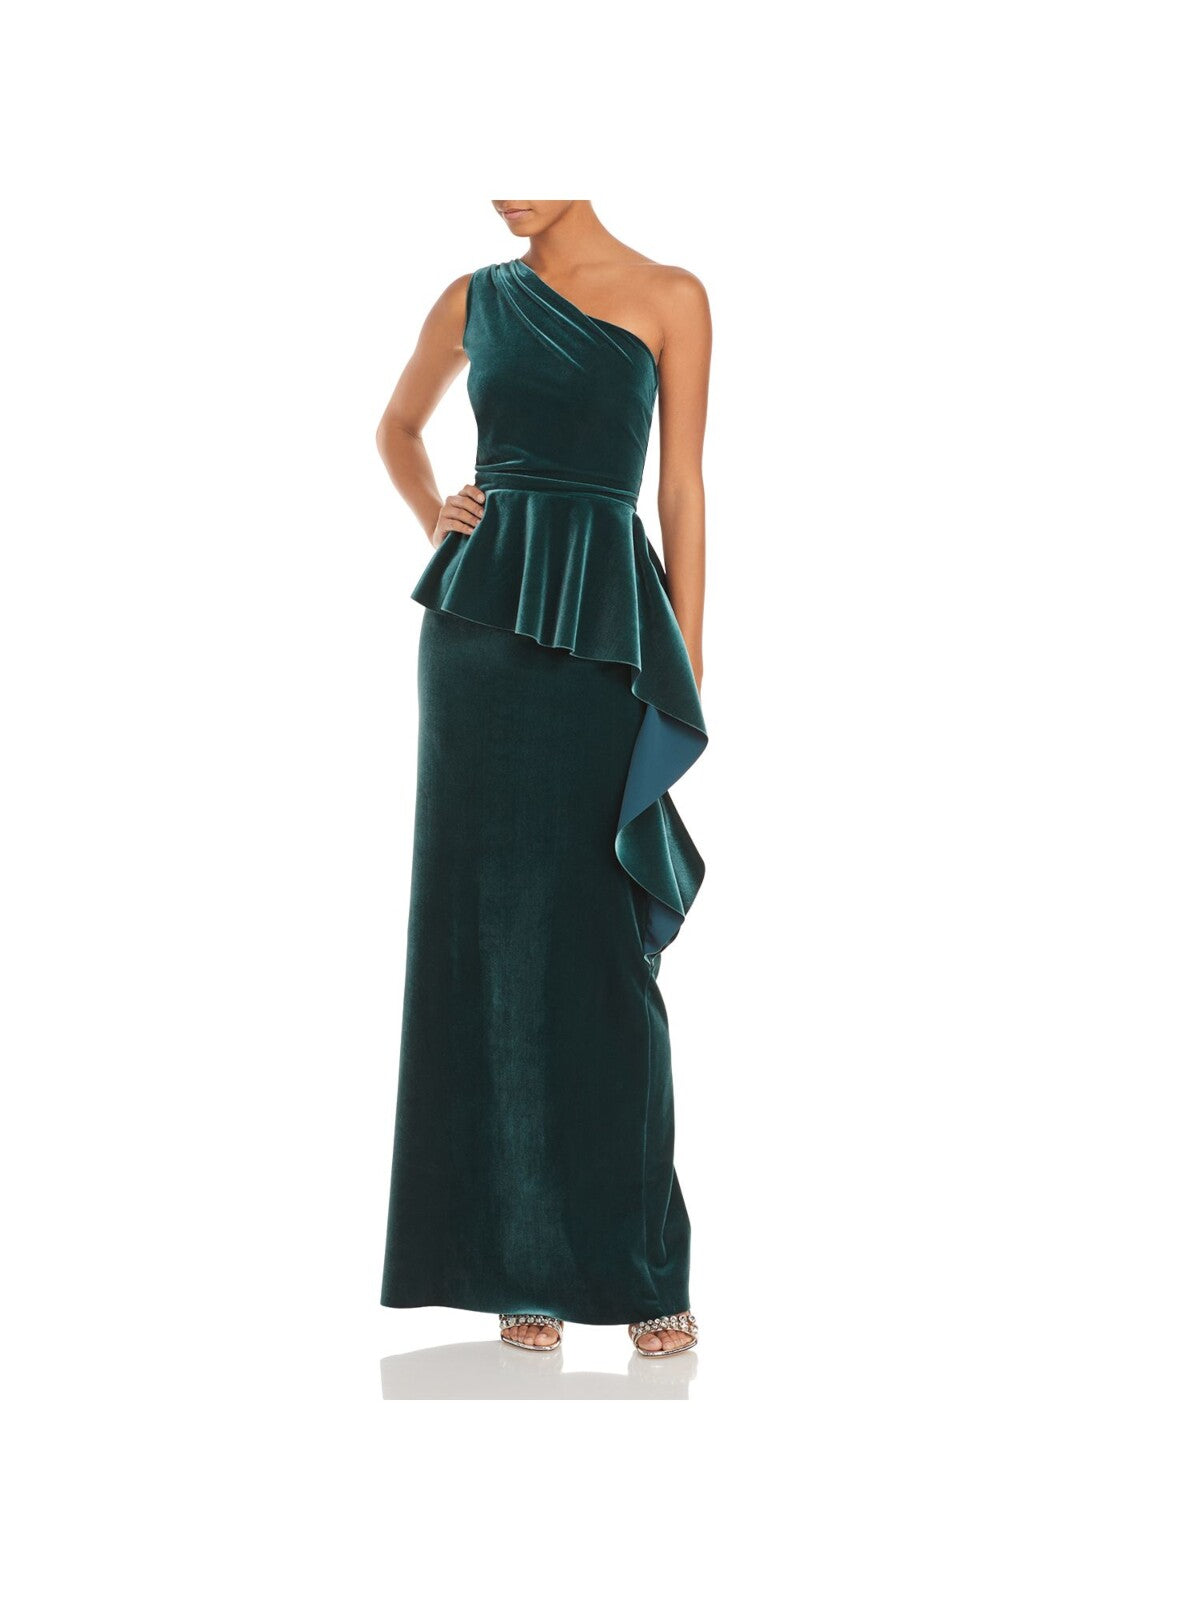 CHIARA BONI LA PETITE ROBE Womens Green Pleated Ruffled Velvet Sleeveless Asymmetrical Neckline Full-Length Formal Gown Dress 48